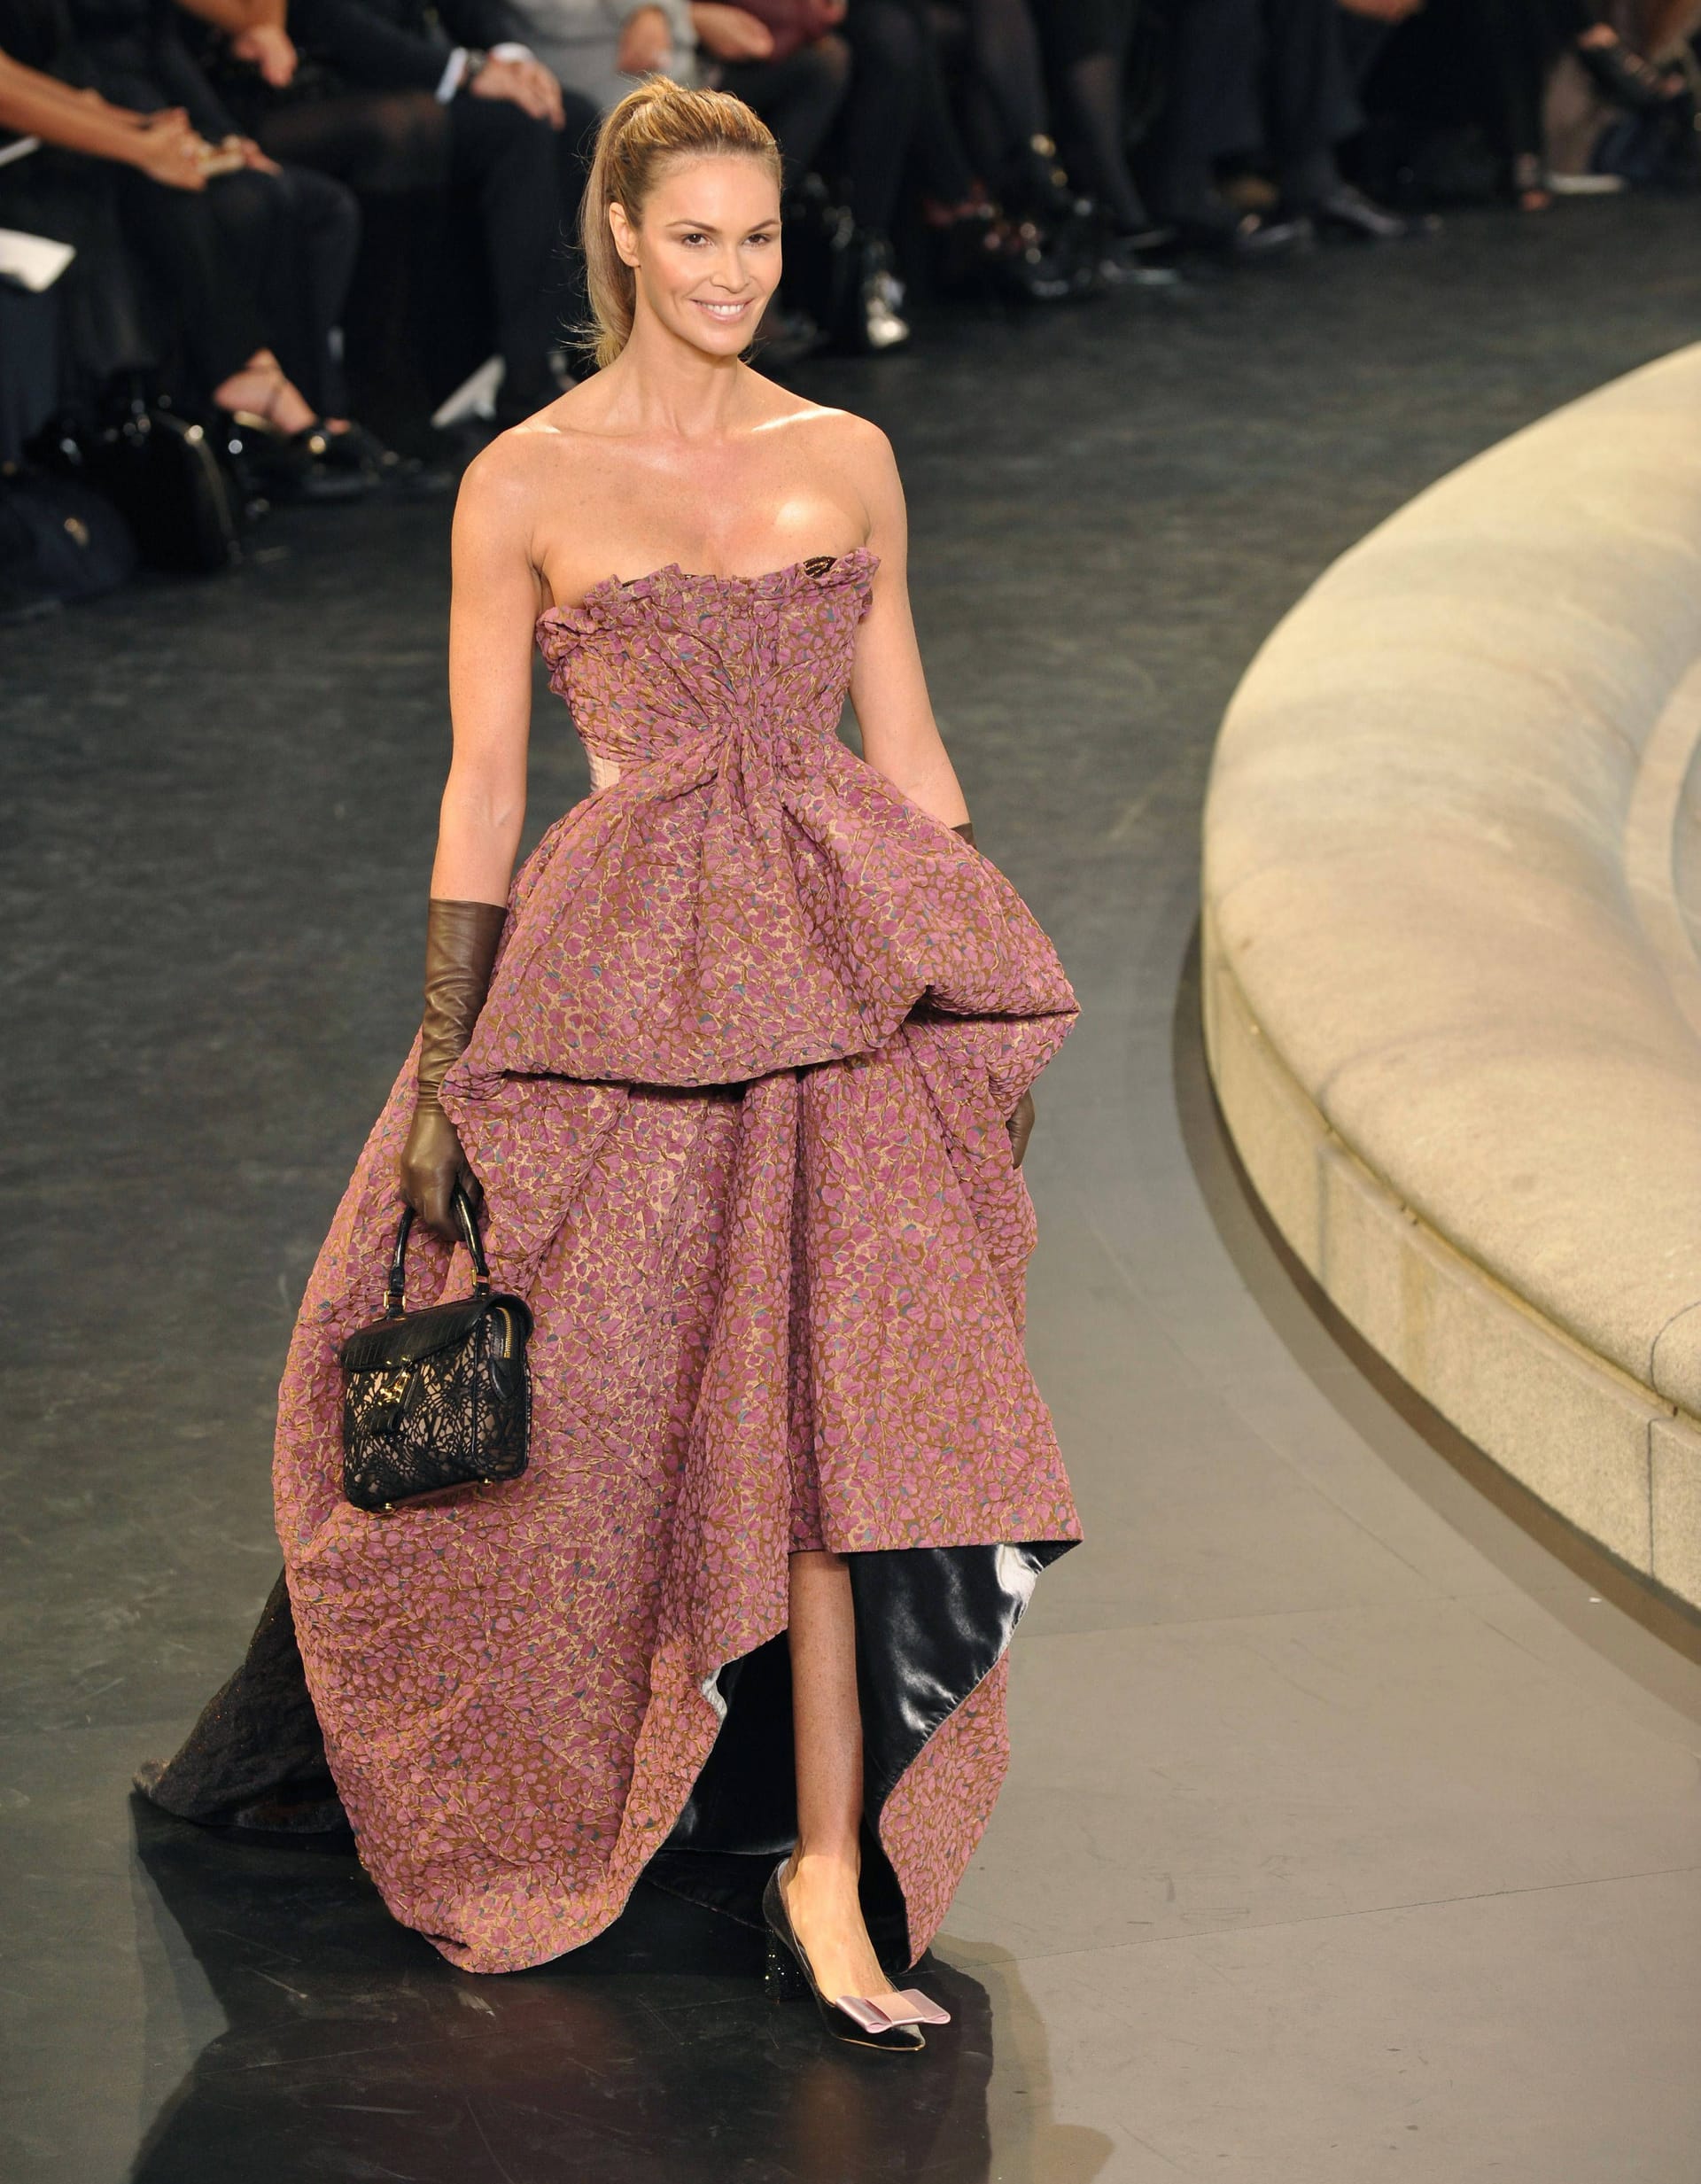 Zuletzt lief Elle Macpherson 2010 für Louis Vuitton.